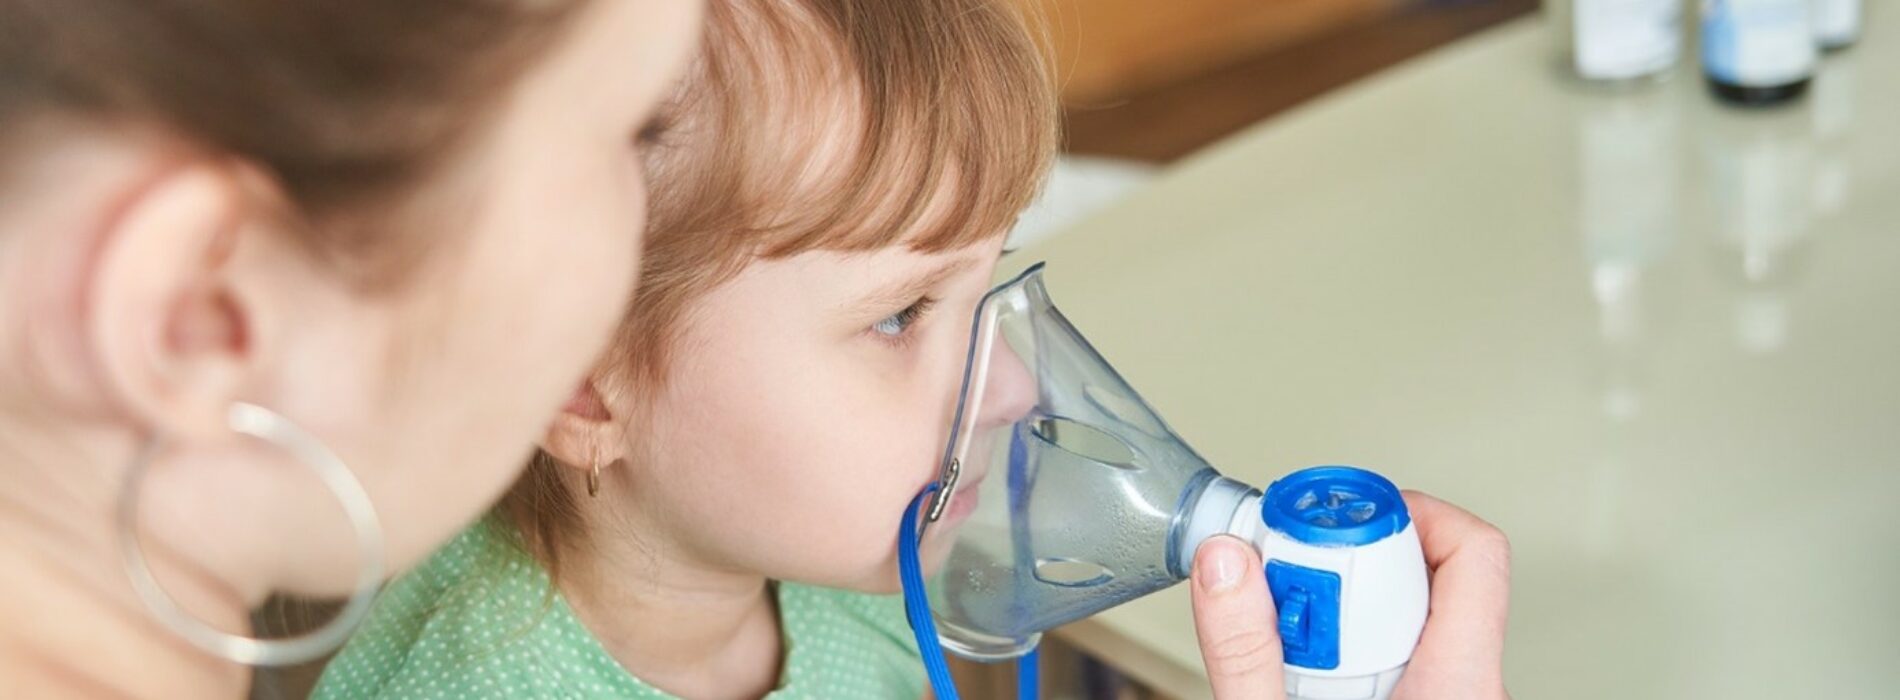 Jakie urządzenia są przydatne podczas inhalacji i nebulizacji?